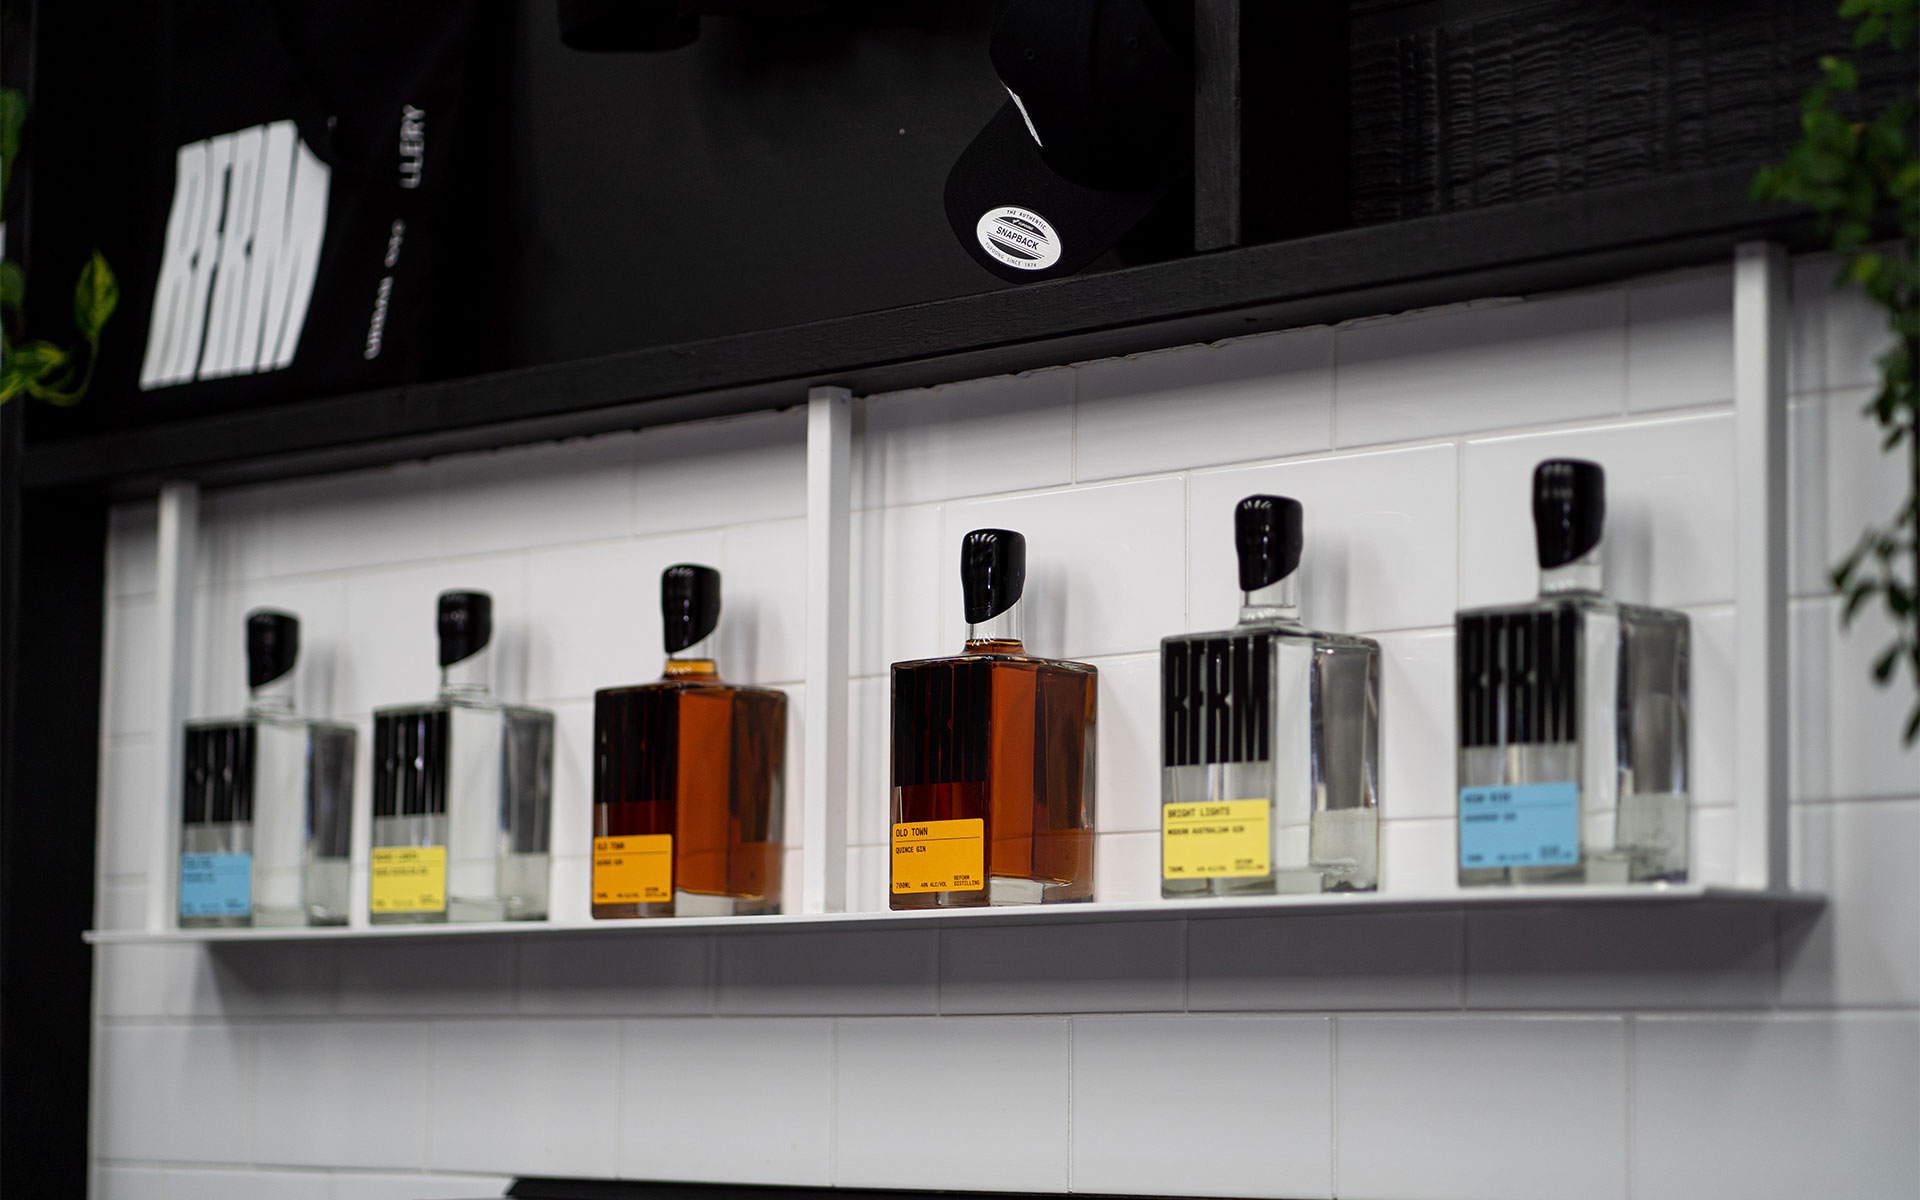 Reform Distilling range of gins on a shelf